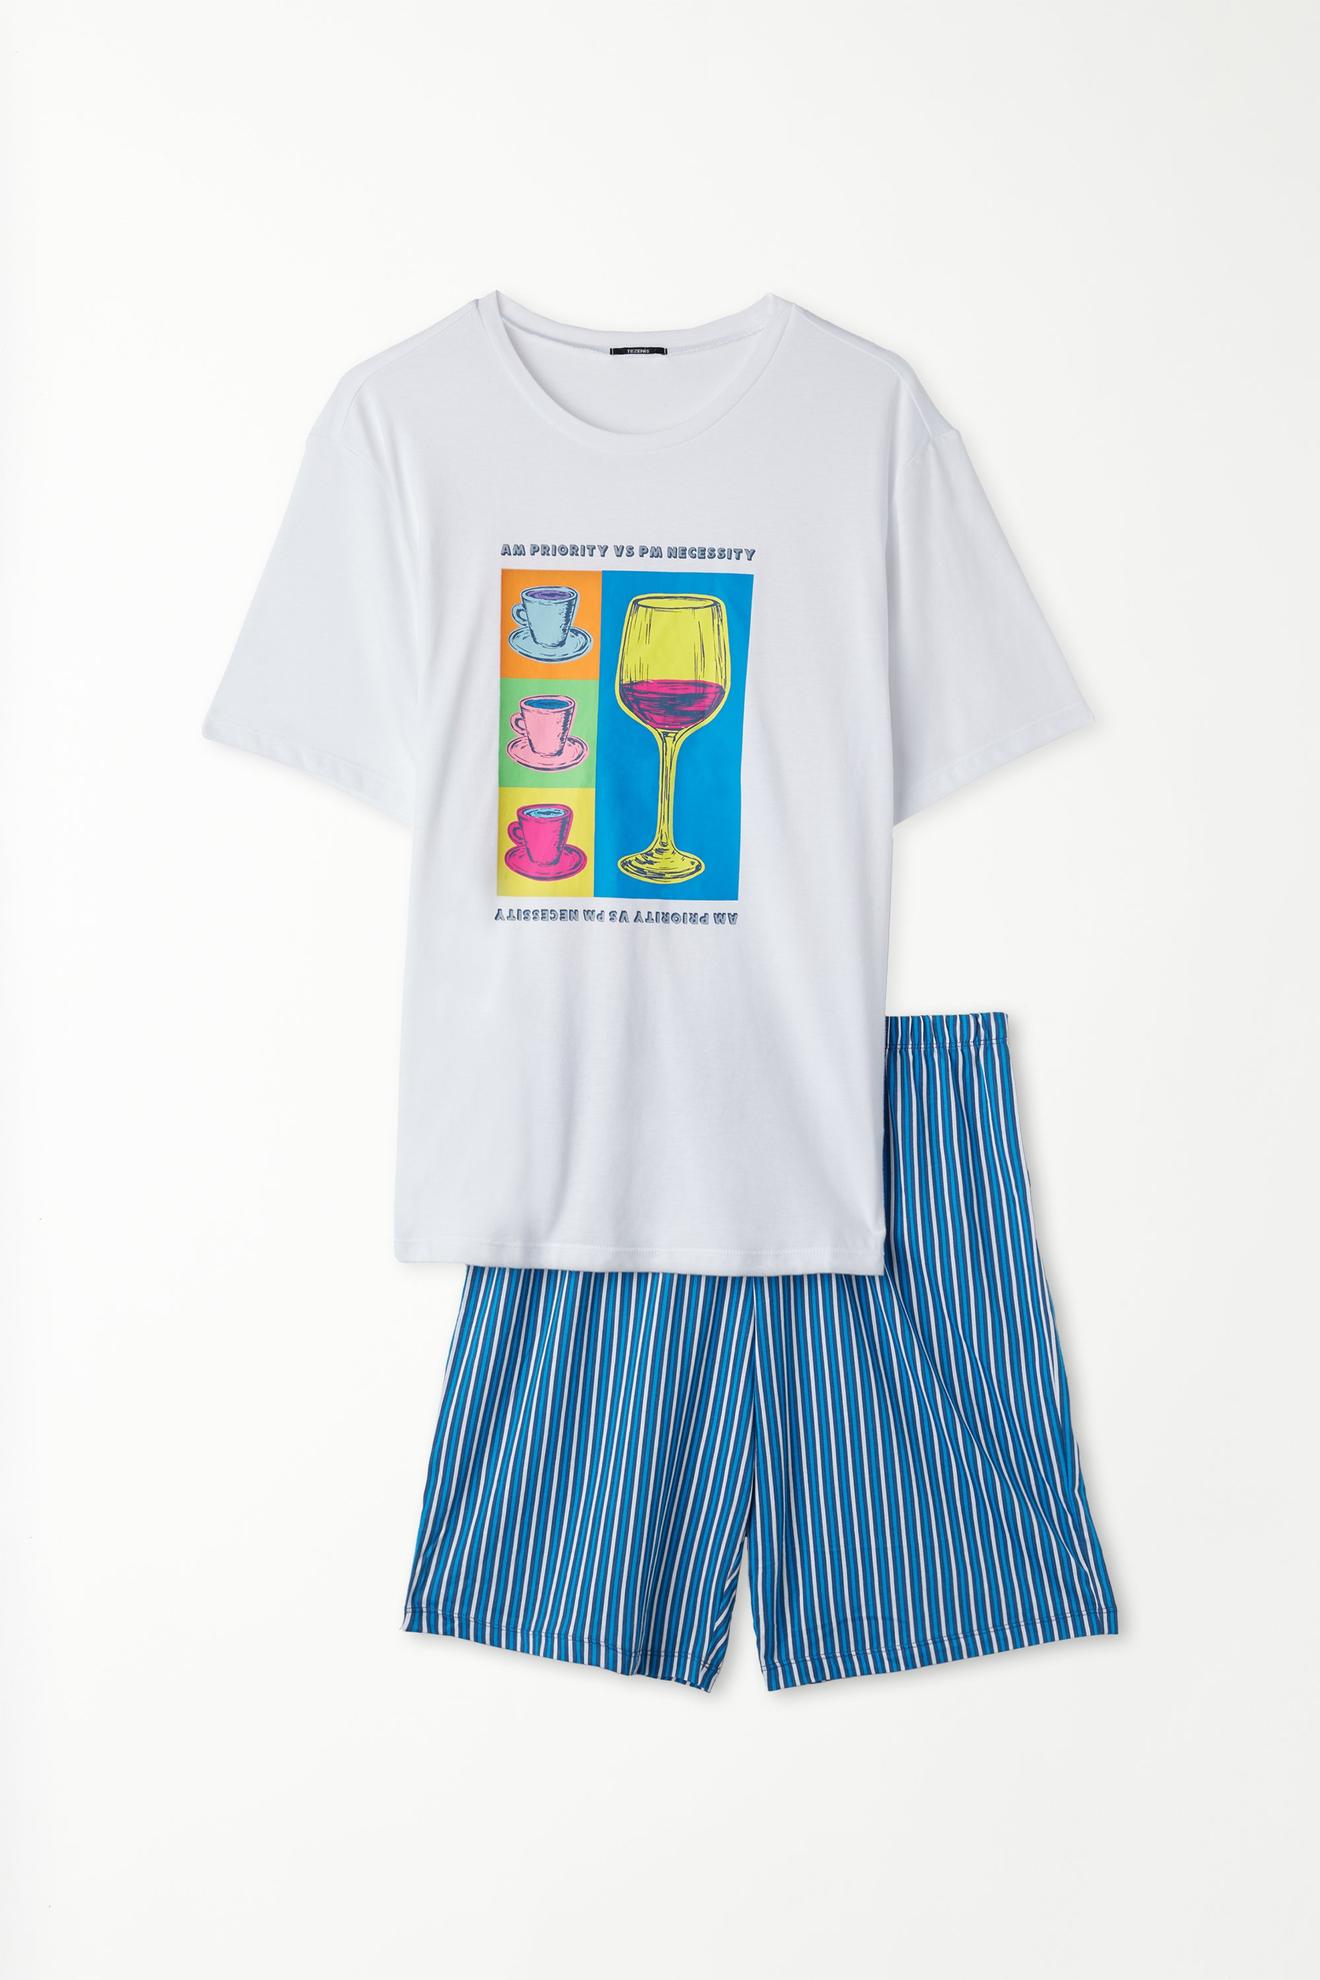 Kurzer Baumwoll-Pyjama mit kurzen Ärmeln und Weinglas-Print für 19,99€ in Tezenis